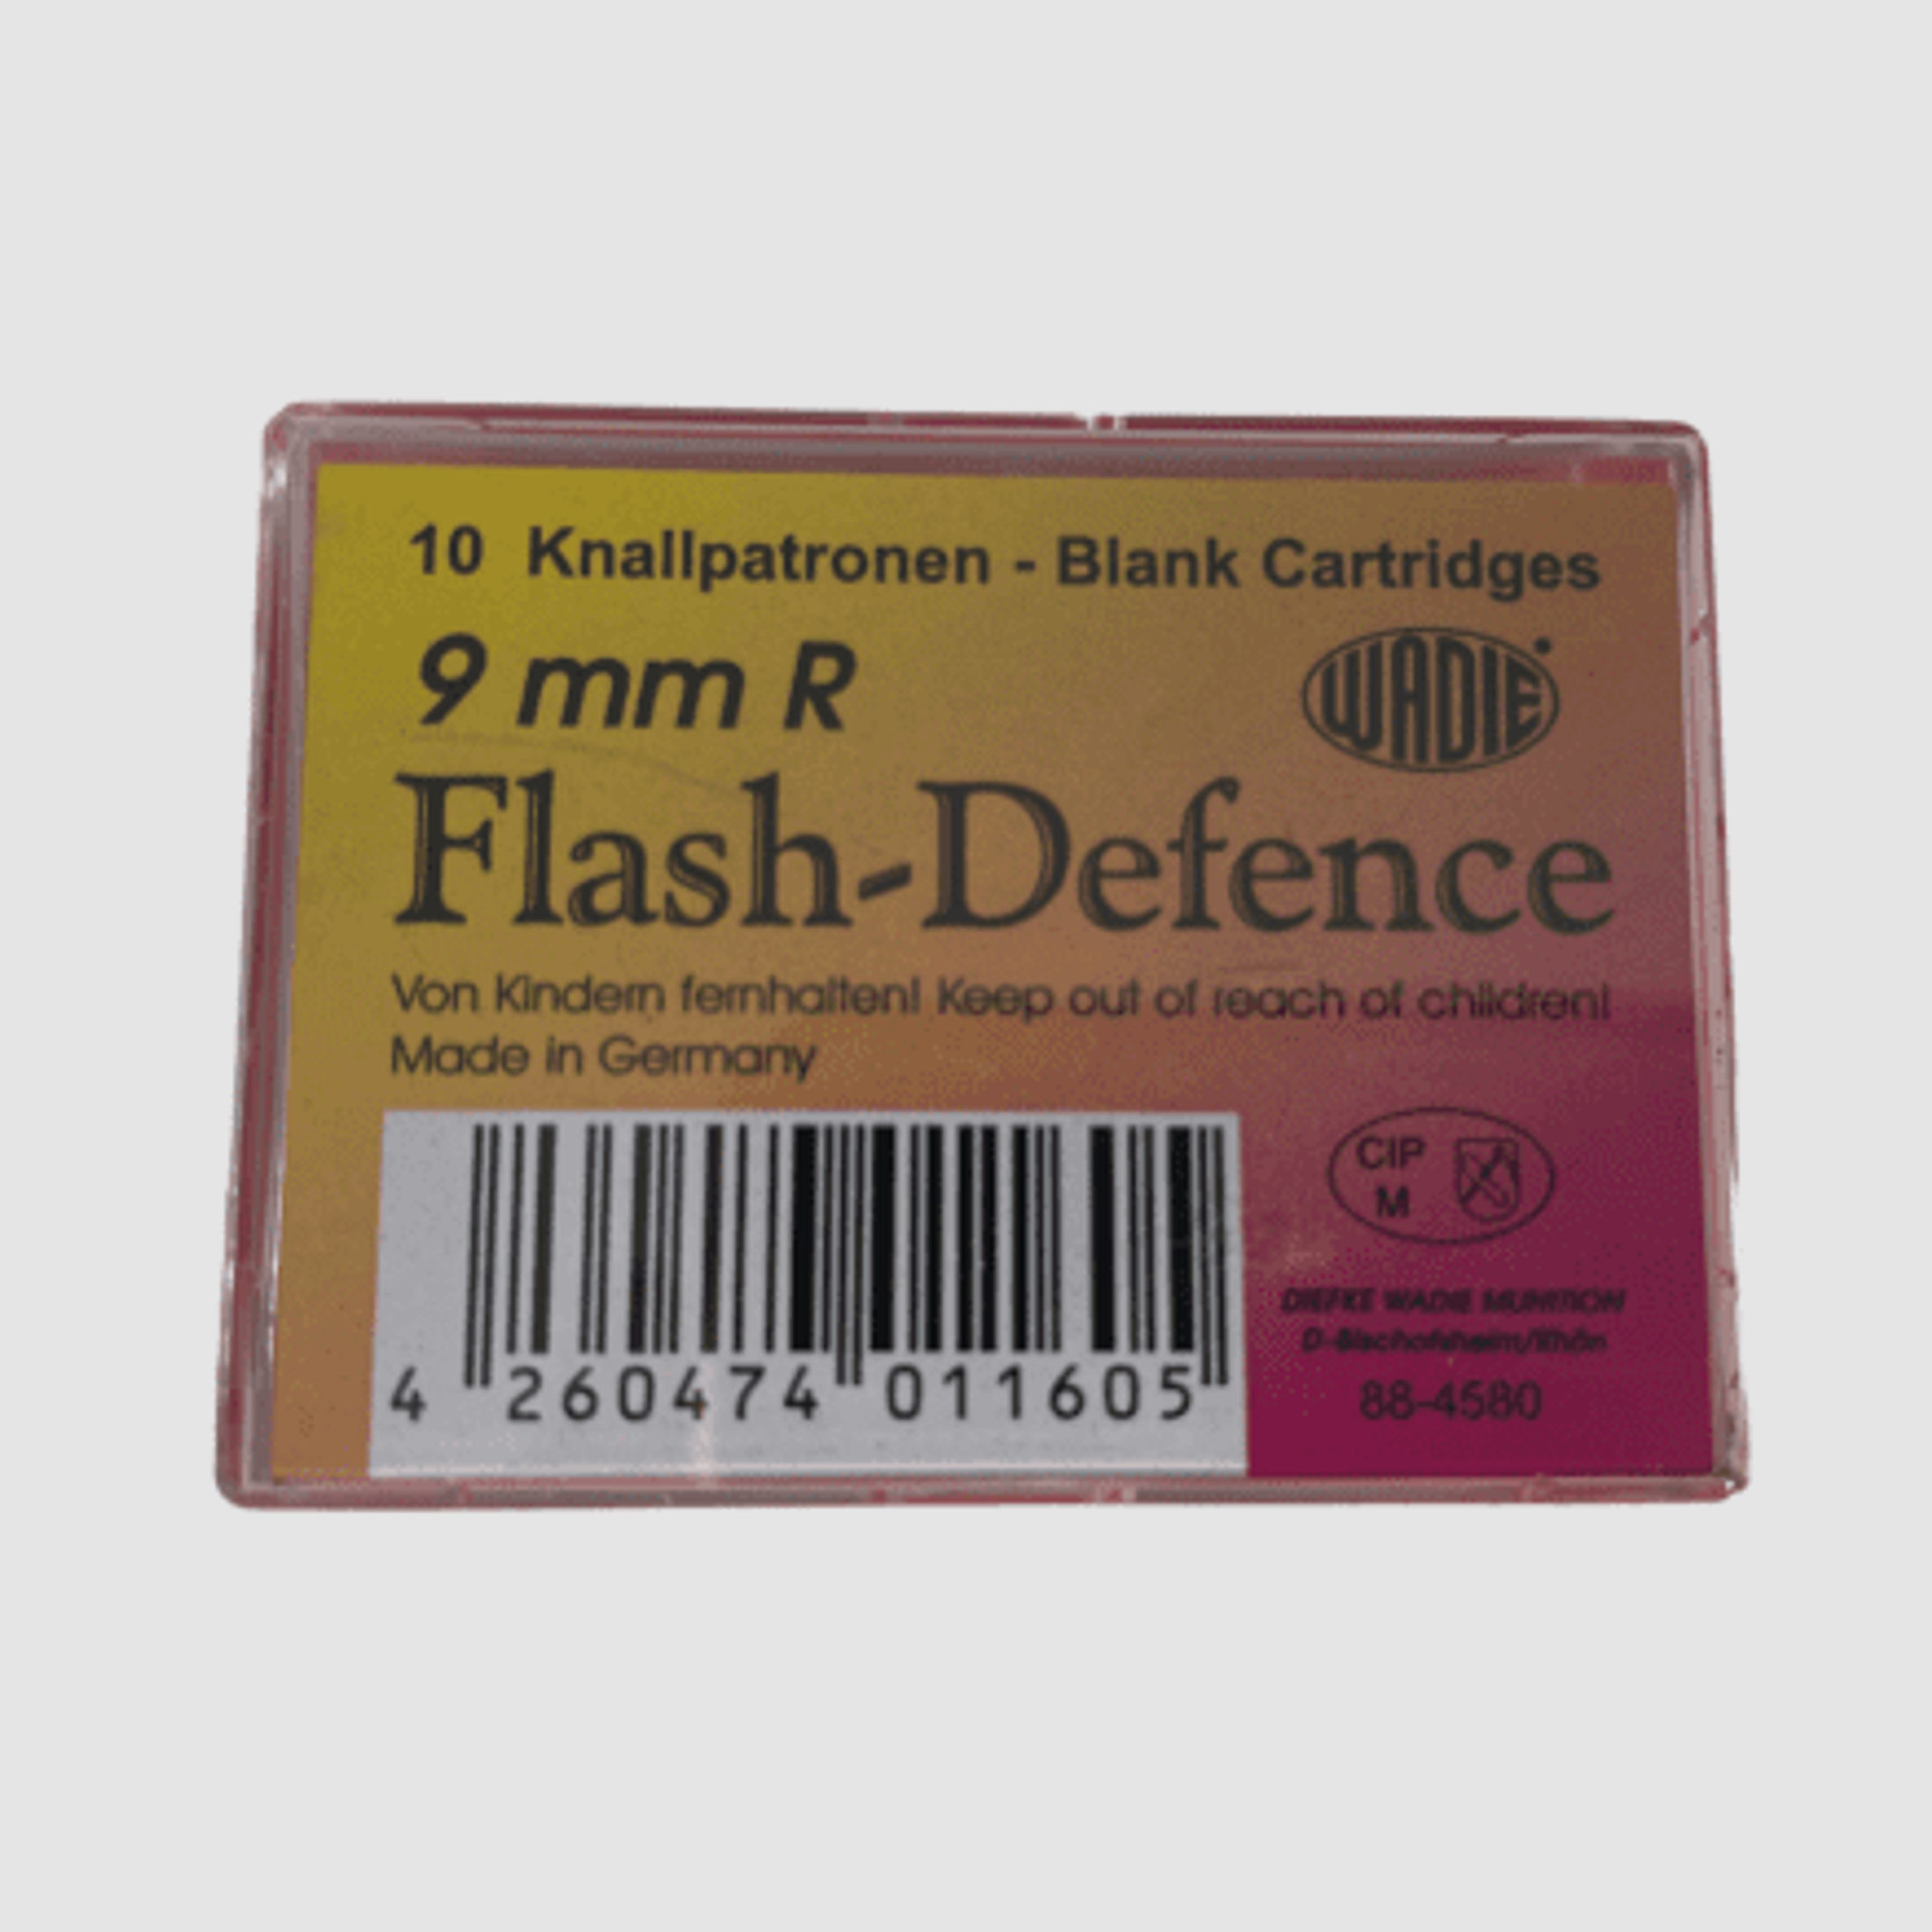 Wadie 9 mm R.K. Flash Defense Platzpatronen - 10 Stk.